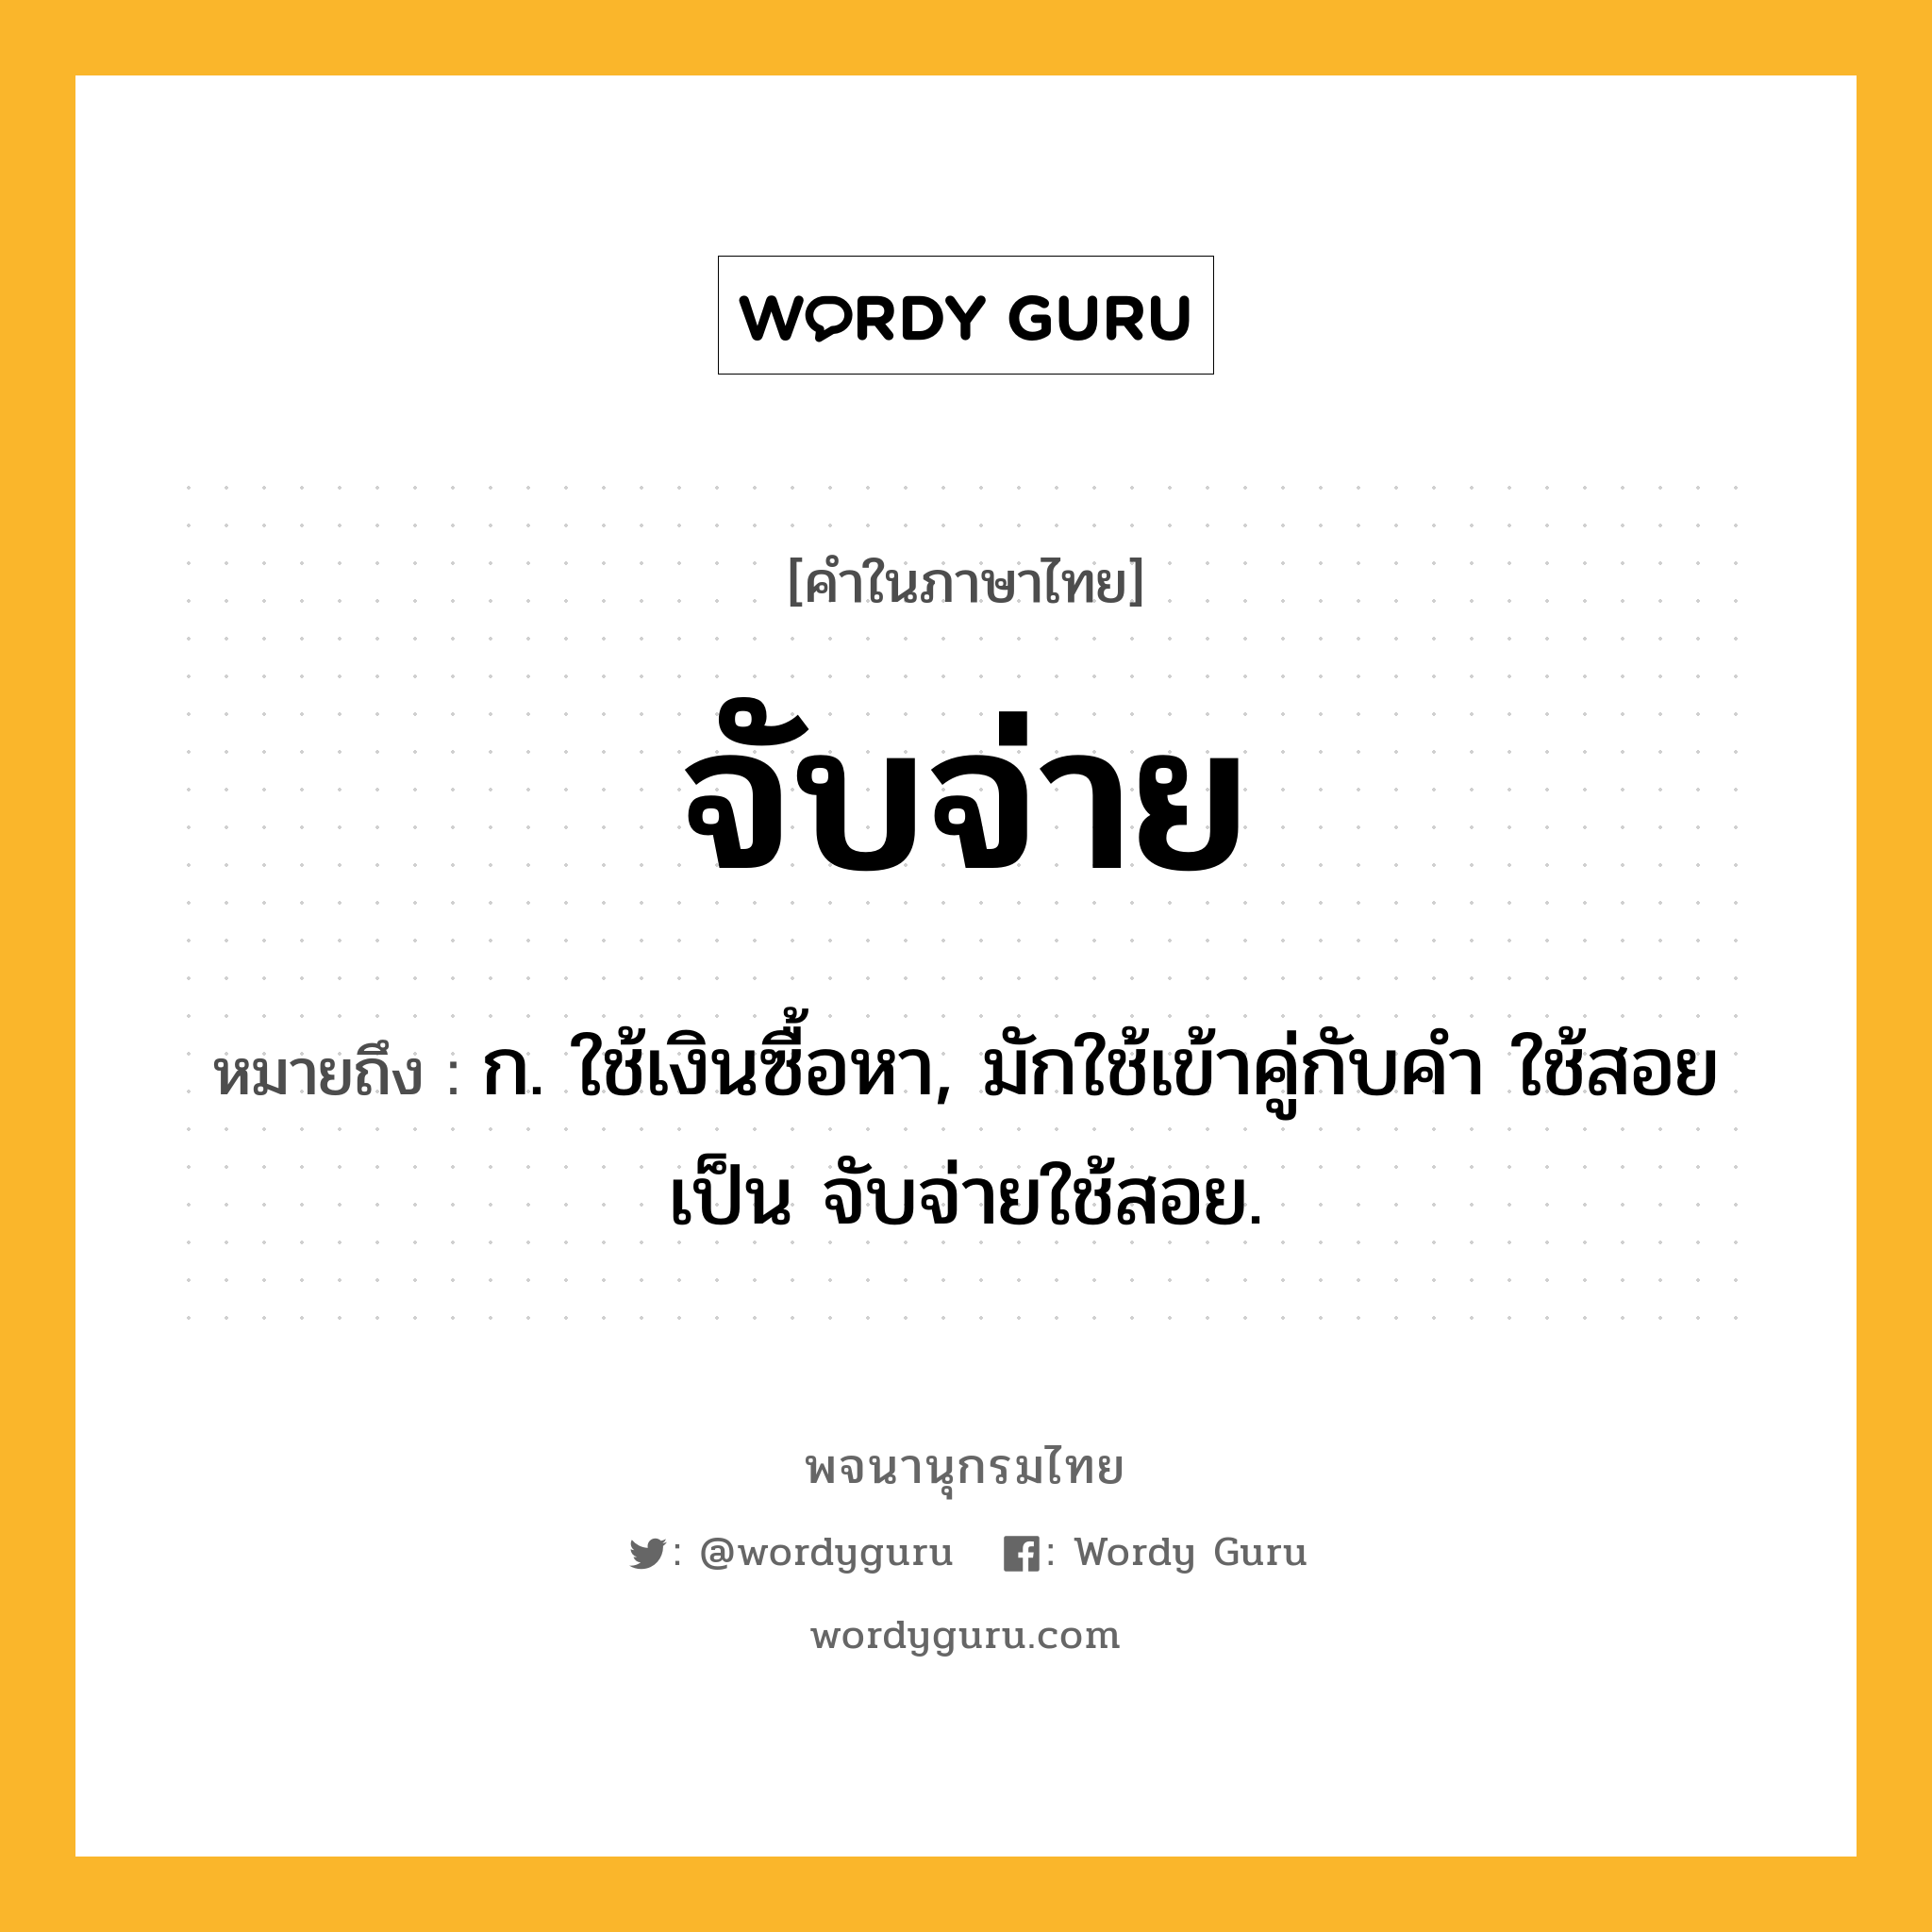 จับจ่าย หมายถึงอะไร?, คำในภาษาไทย จับจ่าย หมายถึง ก. ใช้เงินซื้อหา, มักใช้เข้าคู่กับคำ ใช้สอย เป็น จับจ่ายใช้สอย.